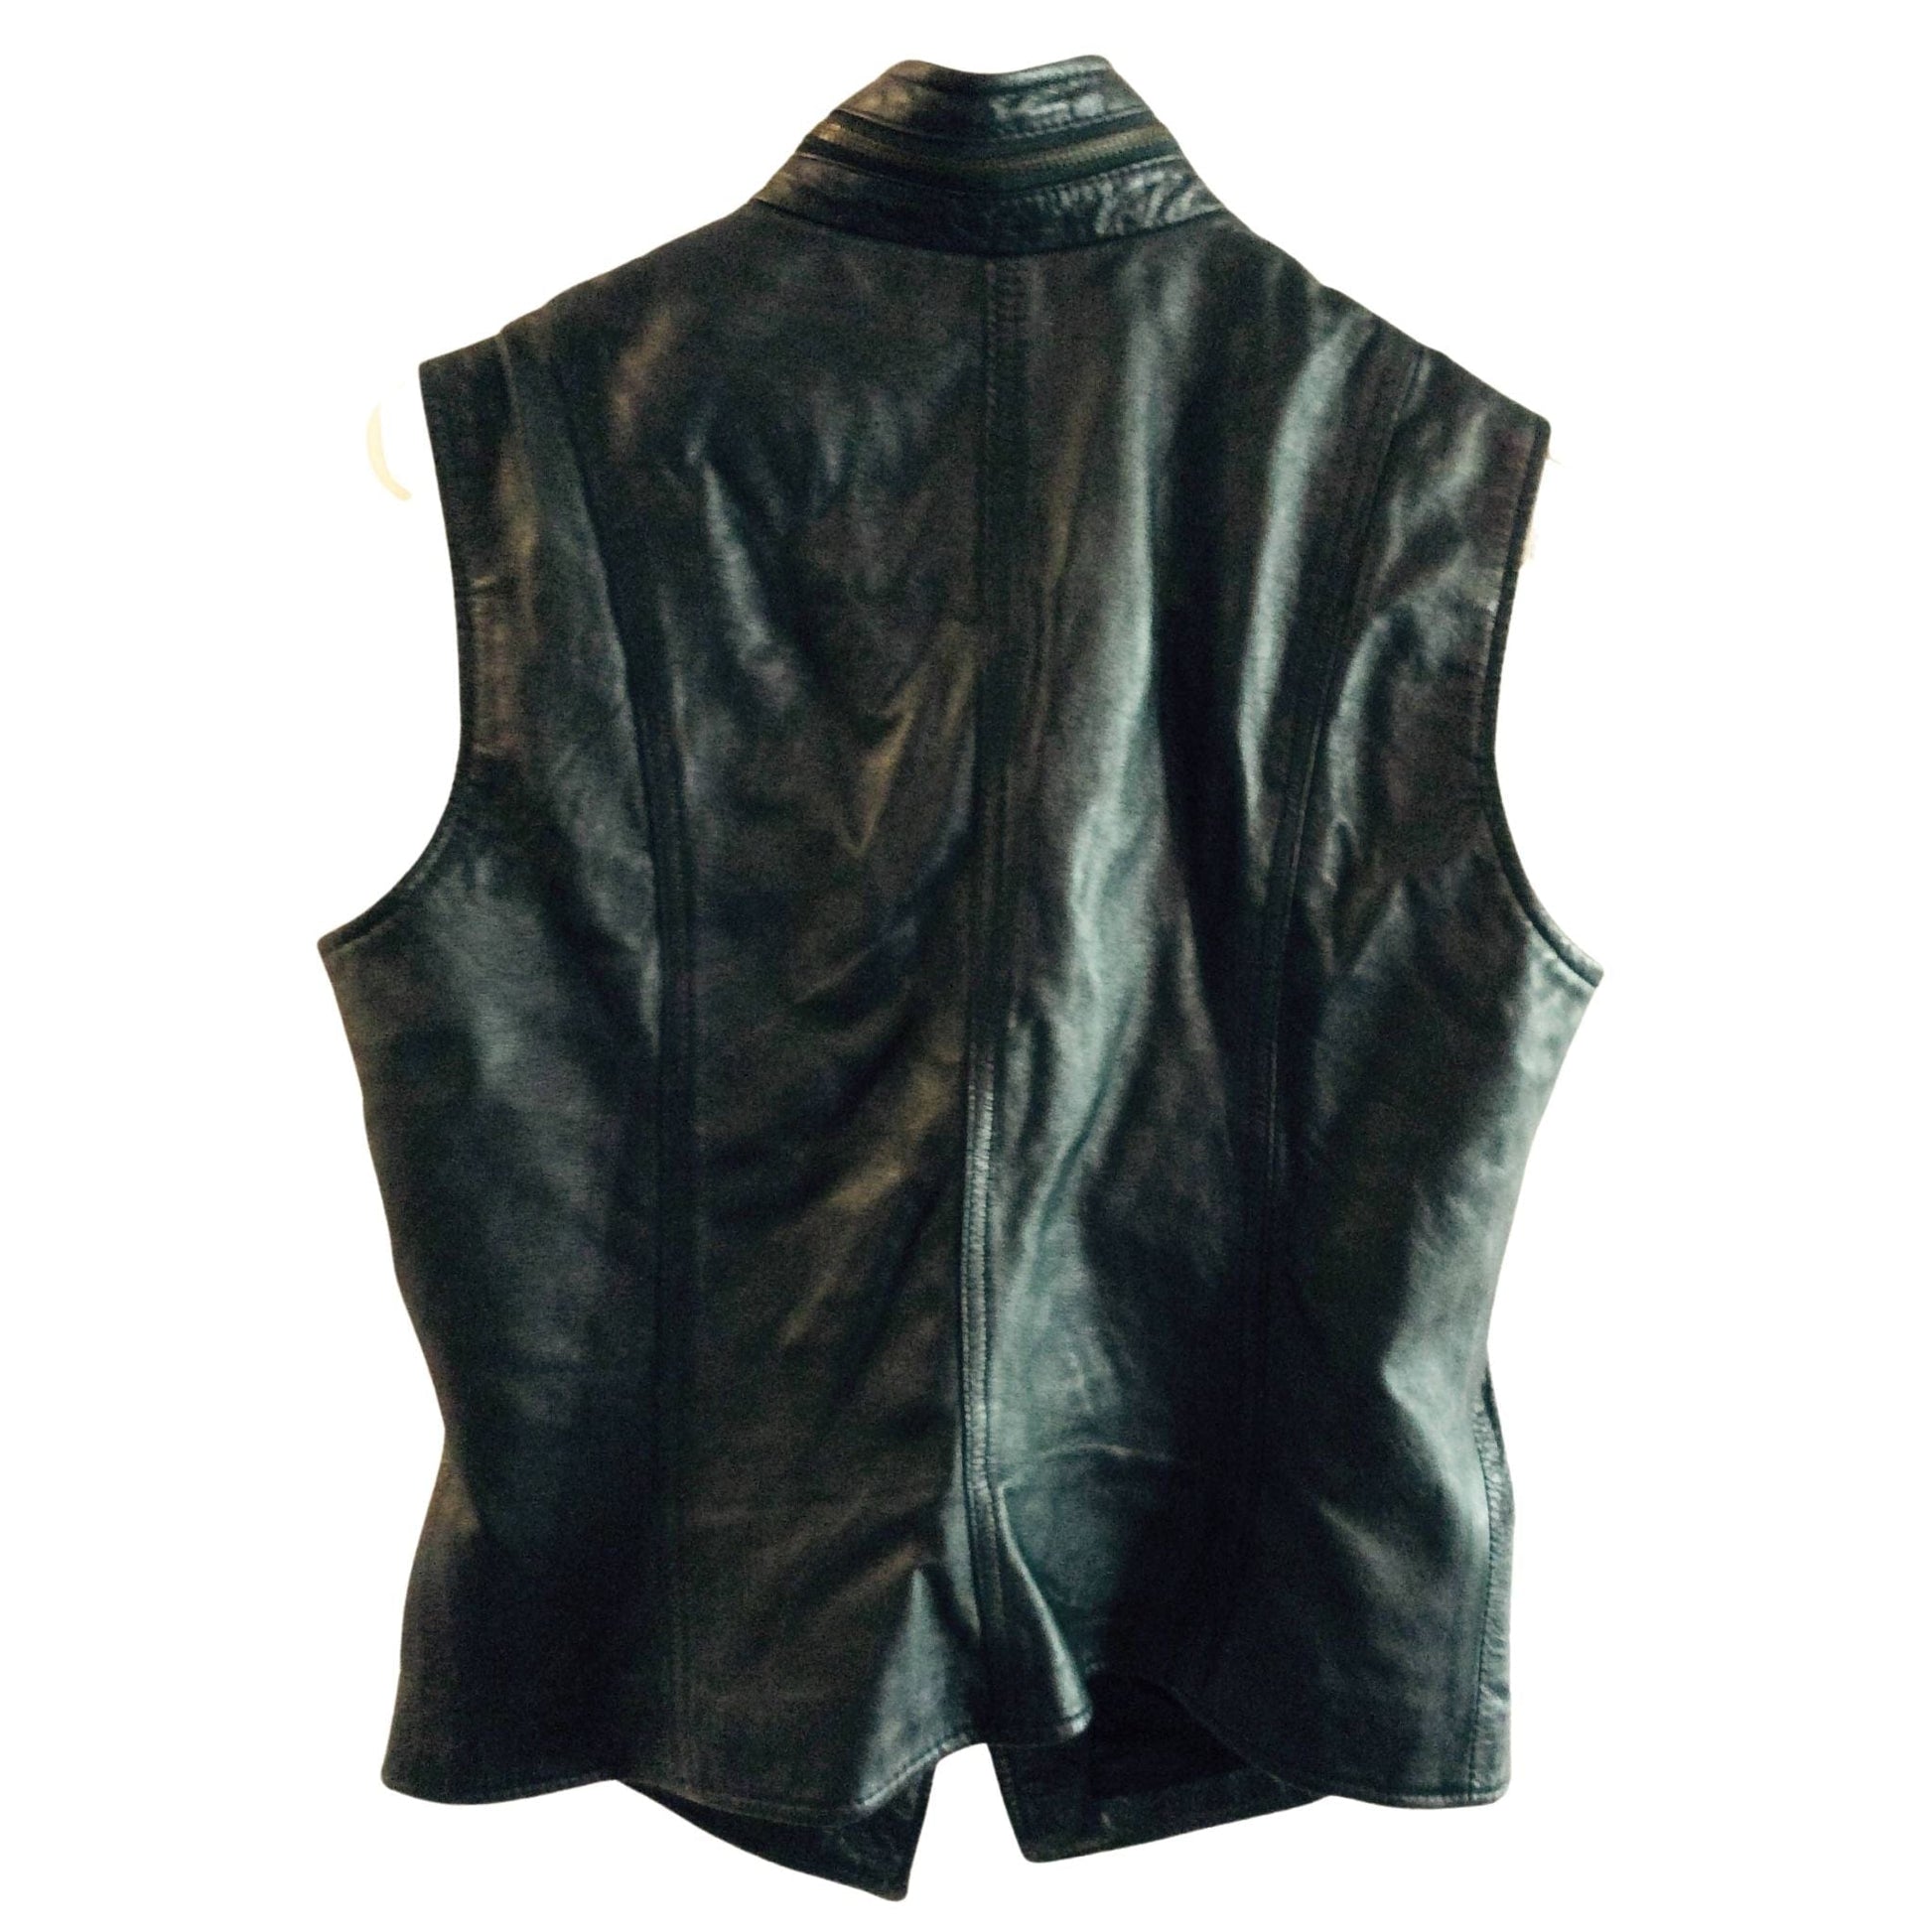 1990s Black Leather Vest Large / Black / Vintage 1990s